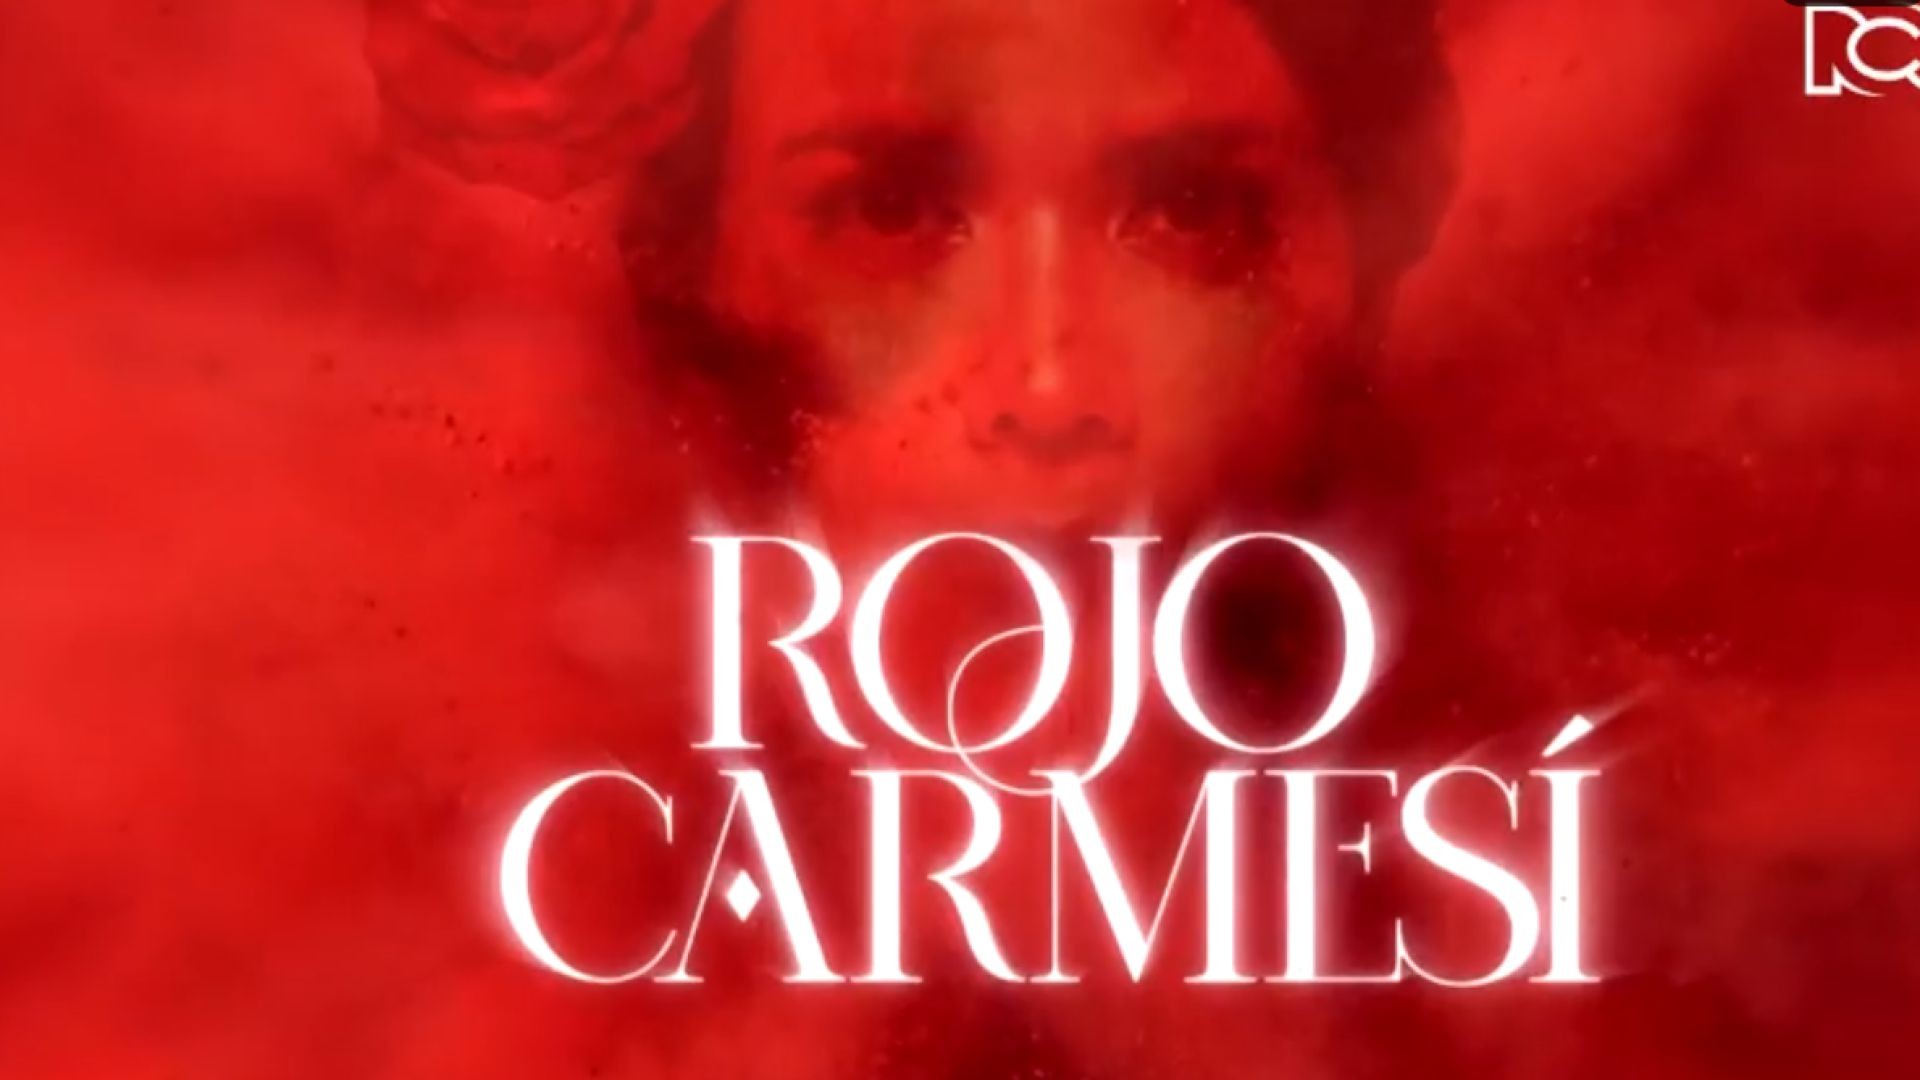 Rojo Carmesí Capitulo 4 Completo - Rojo Carmesí telenovela